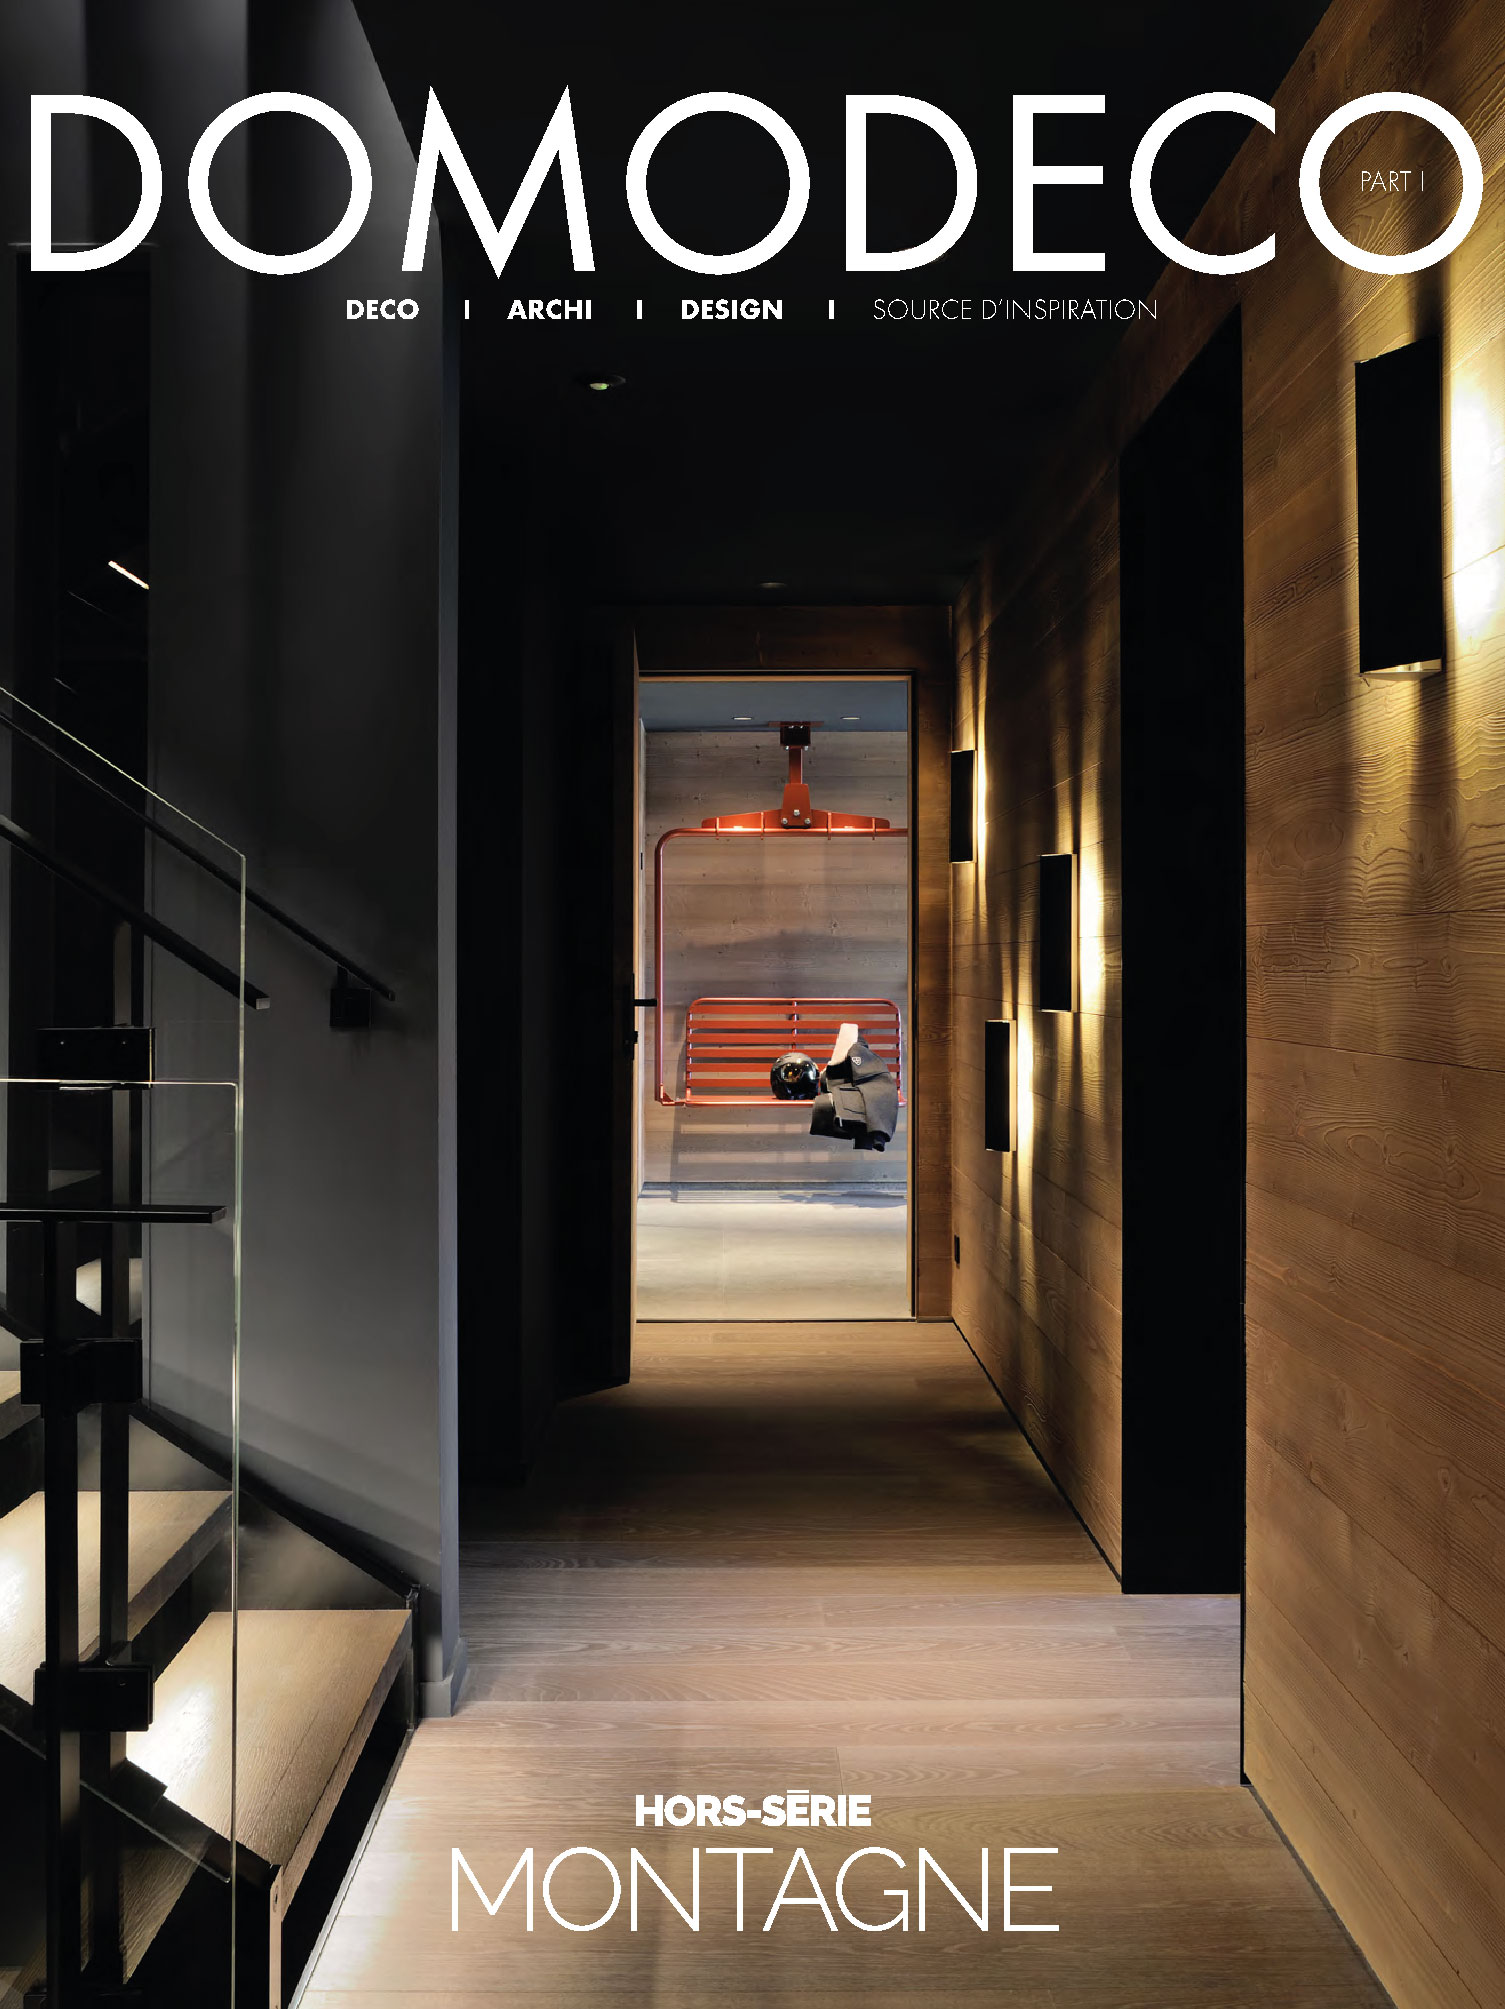 couverture de l'Article sur le chalet kirana de méribel réalisé par le studio jean-philippe nuel dans le magazine domodéco, chalet privé de luxe, architecture d'intérieur, décoration d'intérieur, intérieur de luxe, designer